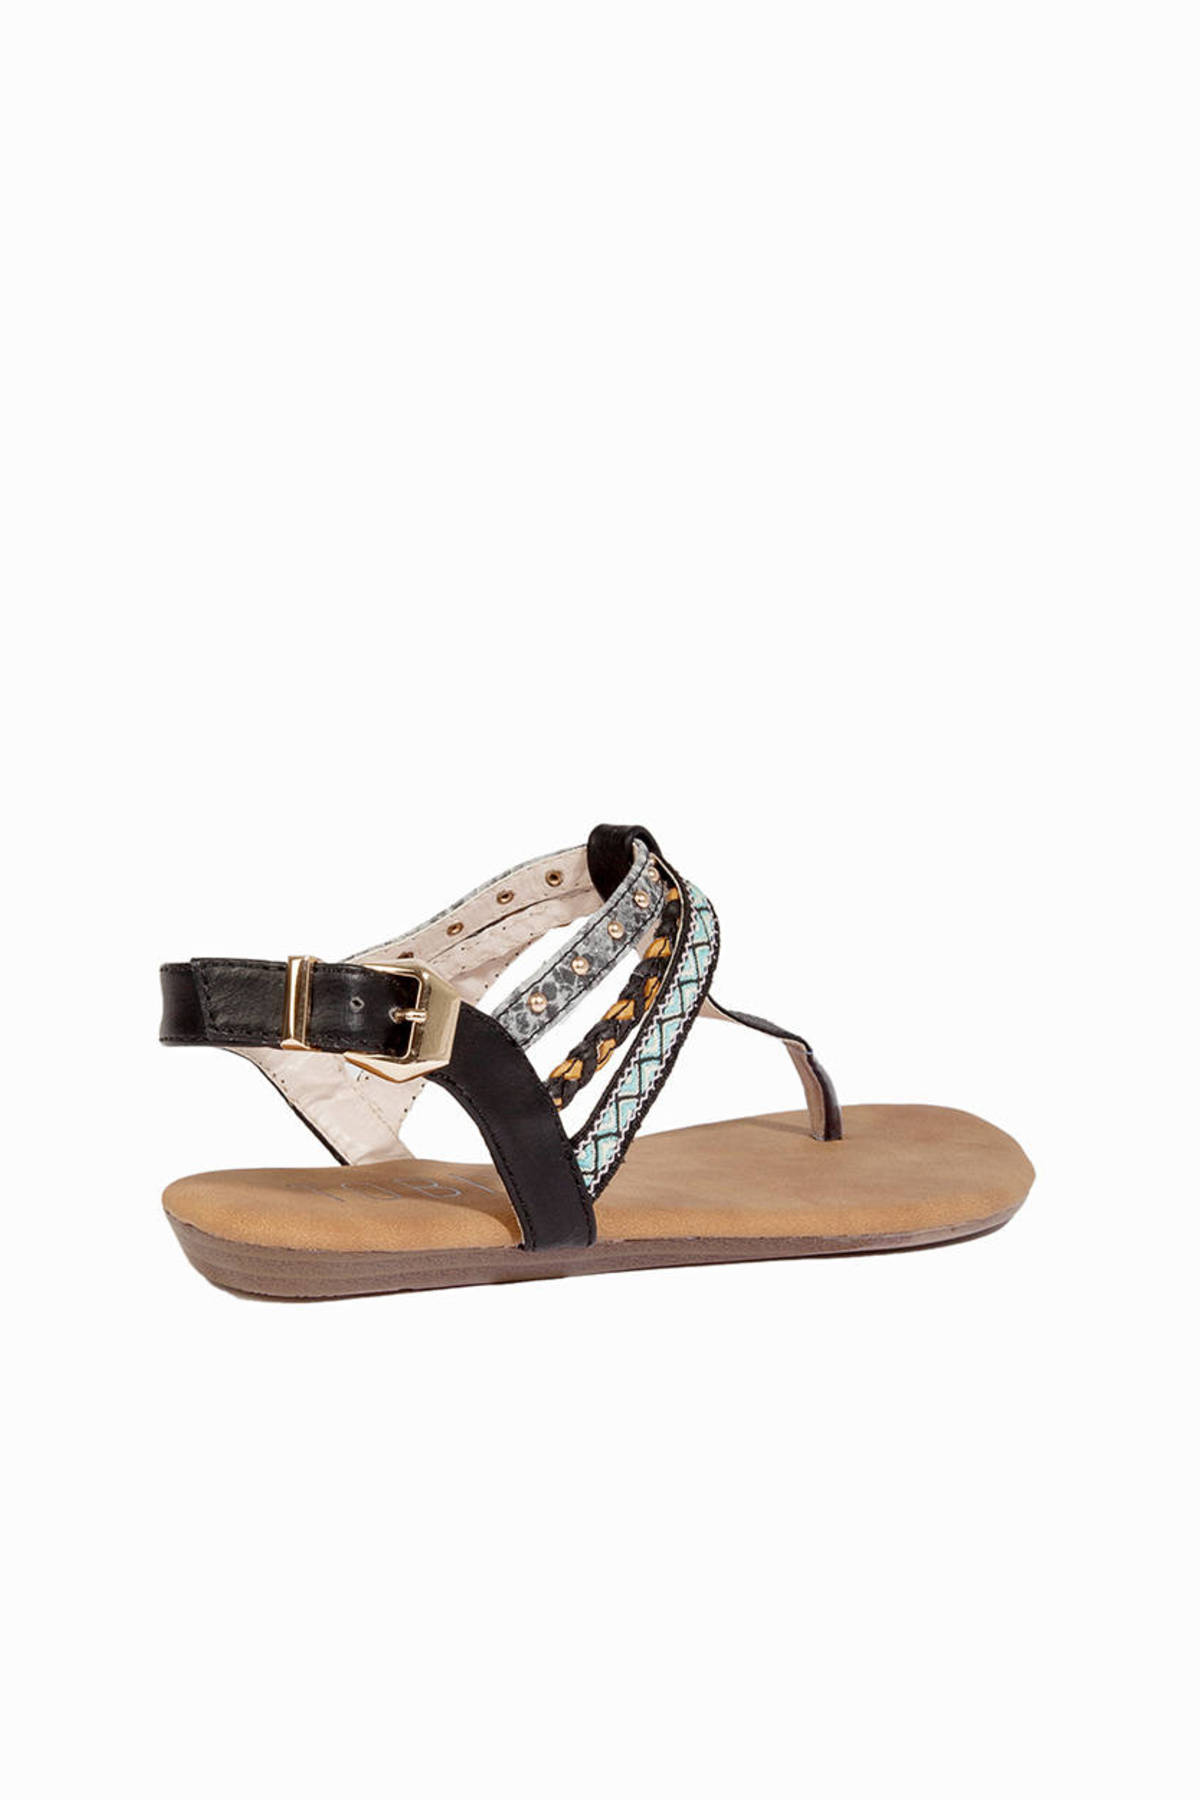 Cecily Sandals in Black - $23 | Tobi US